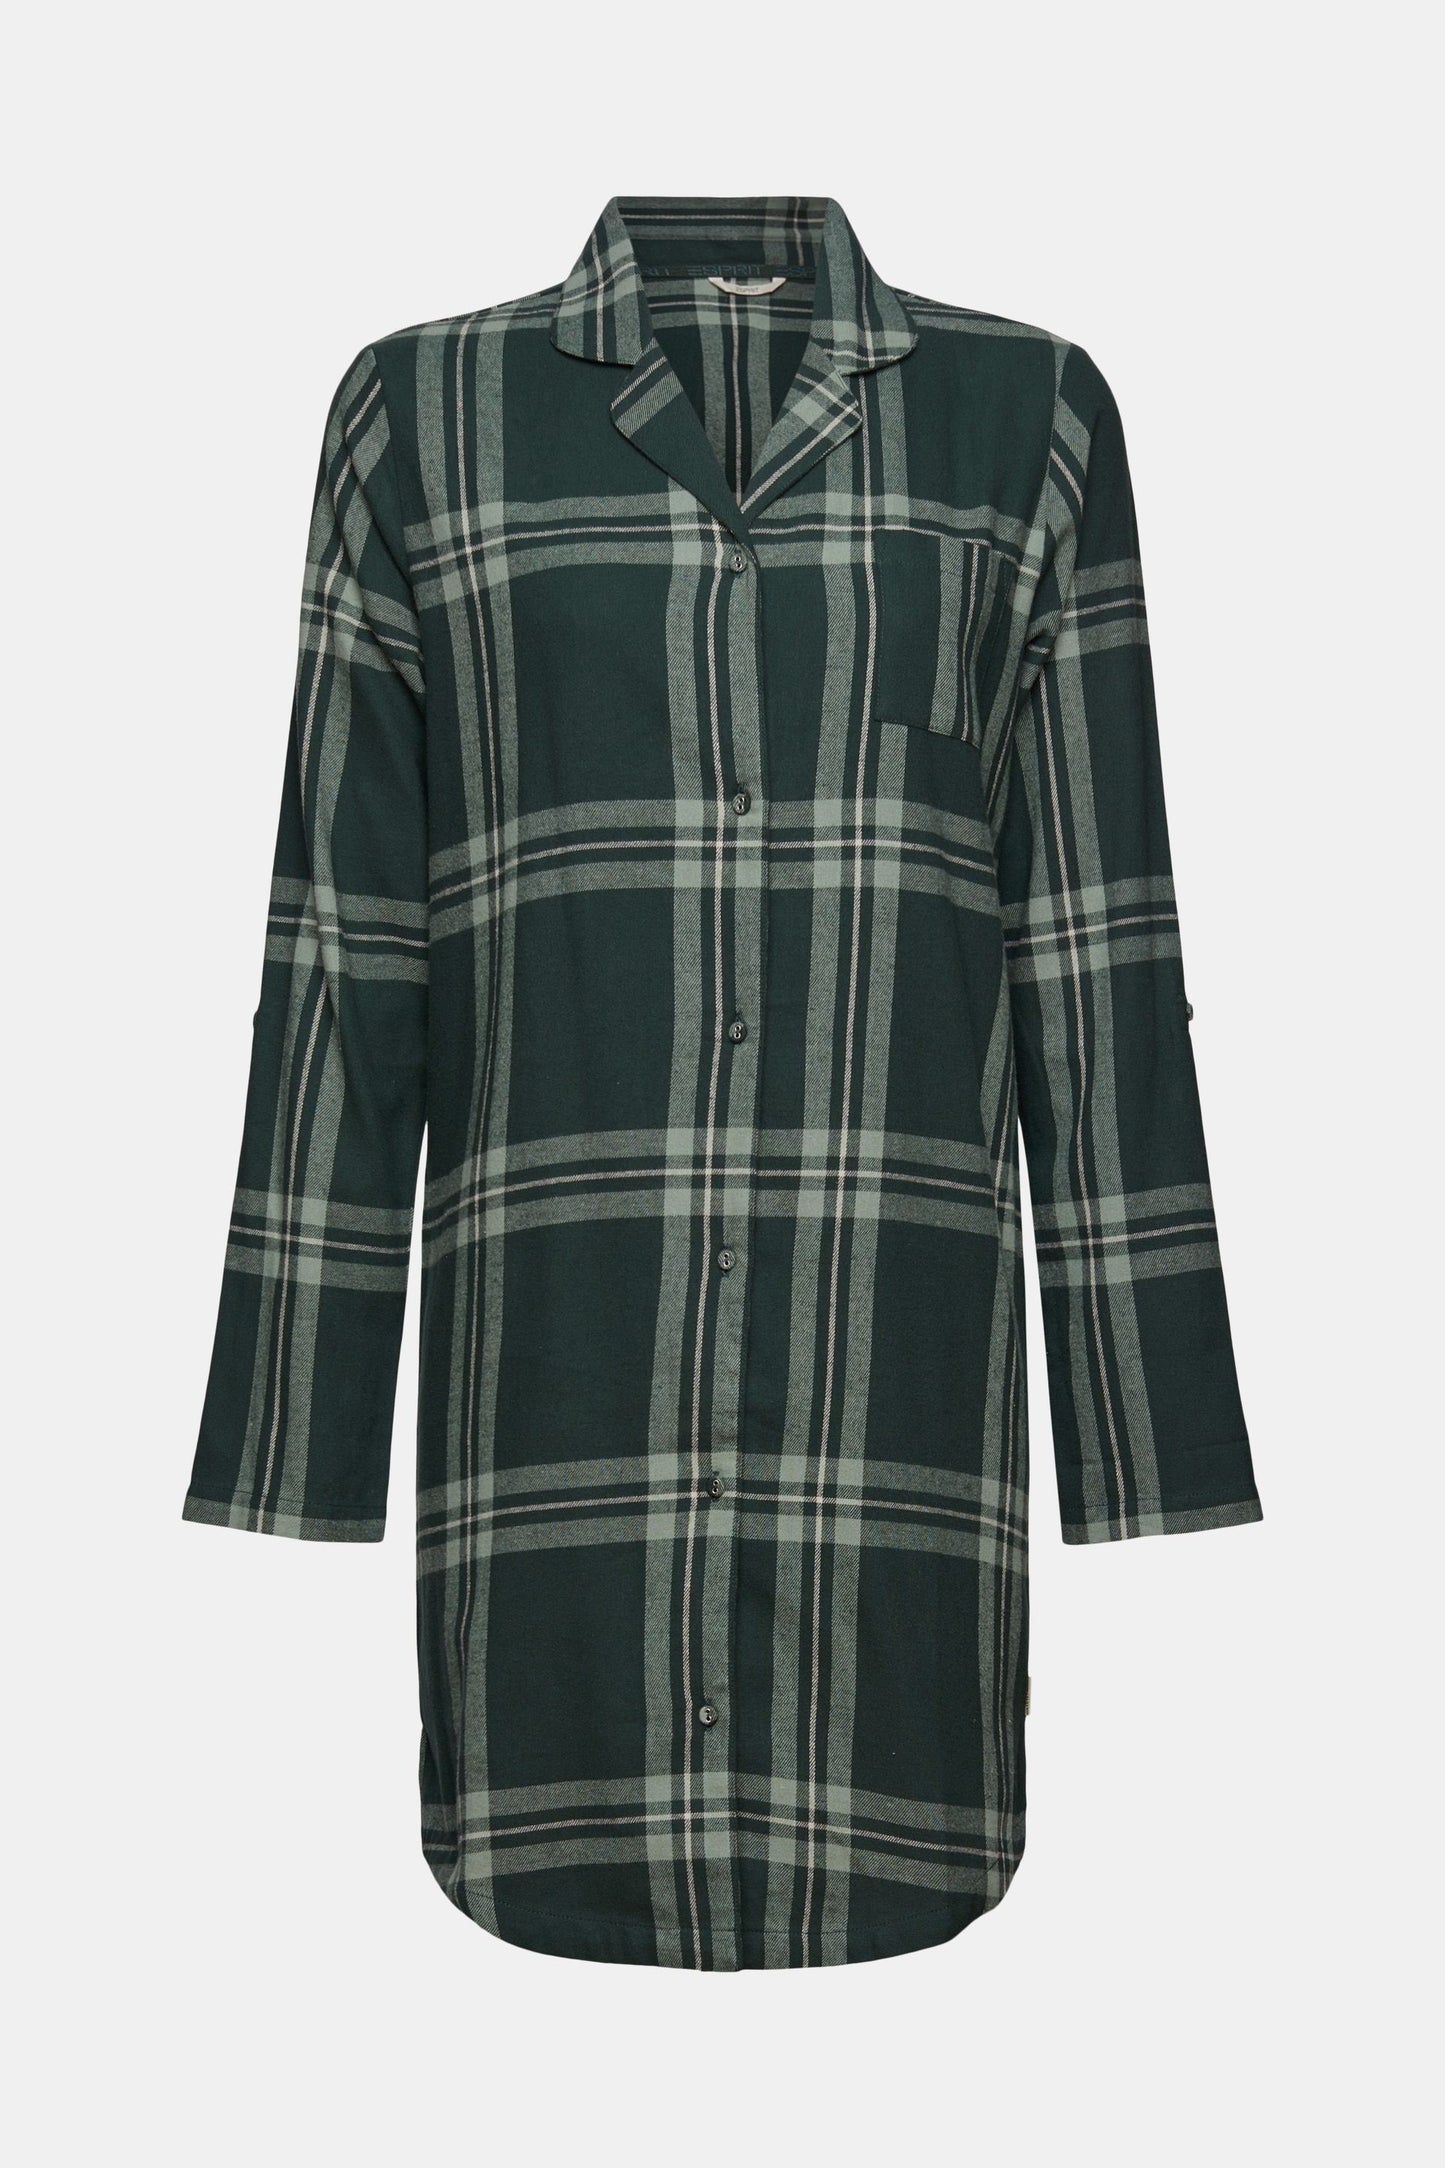 Esprit flannelen nachthemd doorknoop met kraag - 101EF1Y315 - Teal Green